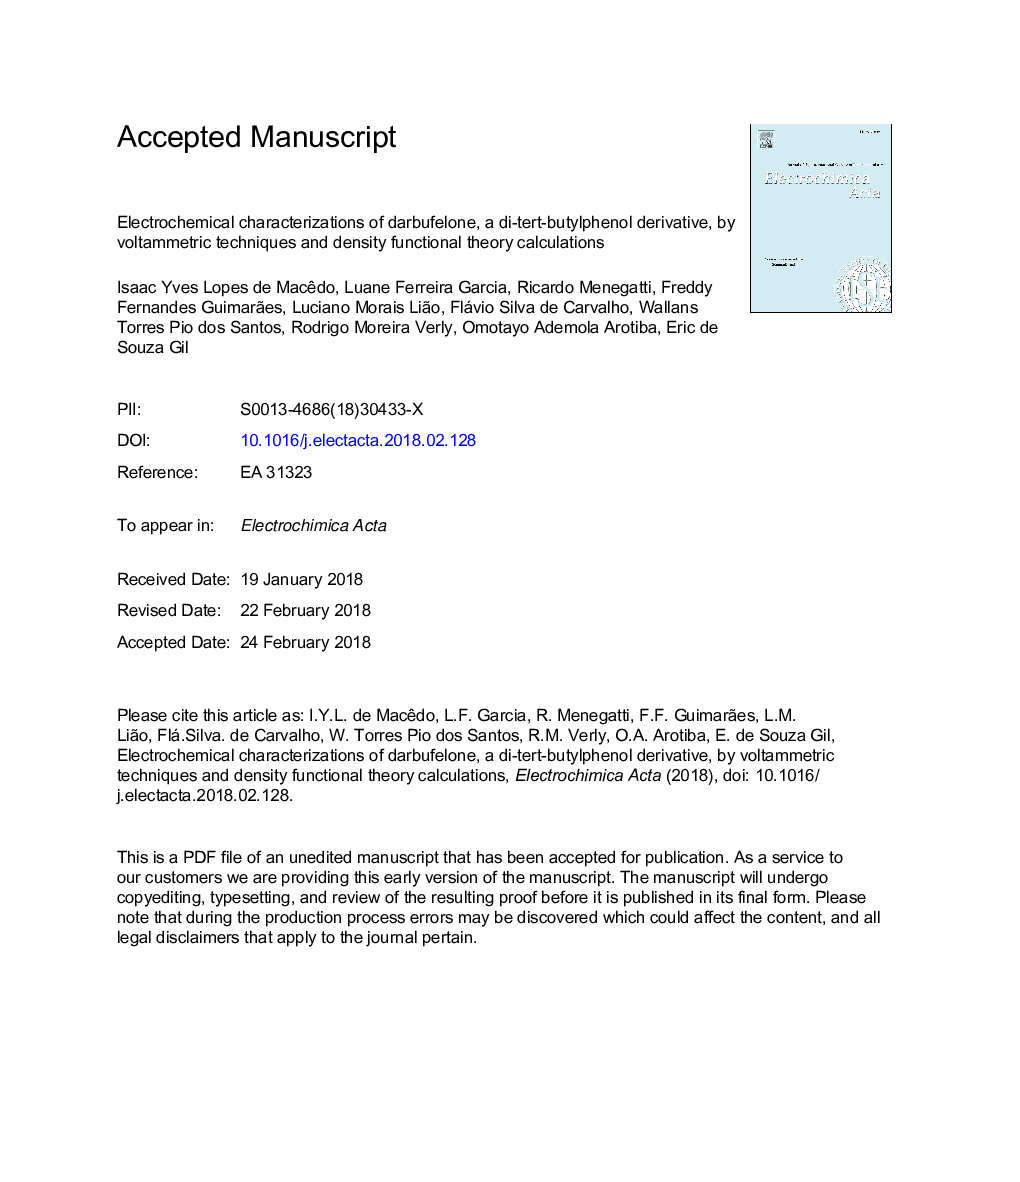 ویژگی های الکتروشیمیایی کاروتفلون، مشتق دیتریت بوتیل فنول، با استفاده از تکنیک های ولتاژ و محاسبات تئوری کاربردی تراکم 